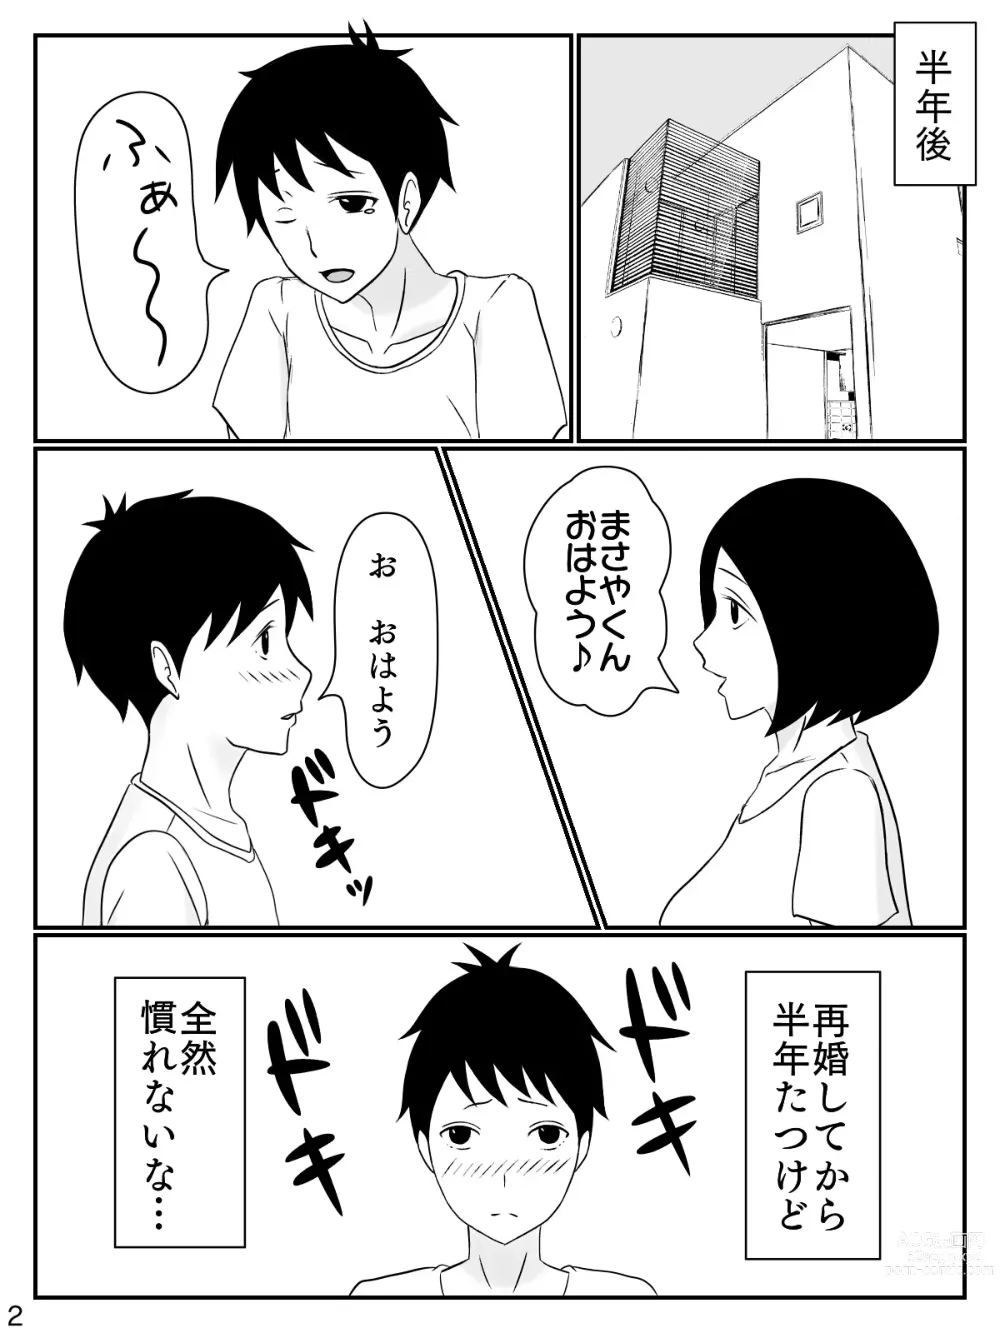 Page 3 of doujinshi 6-tsu Chigai no Okaasan